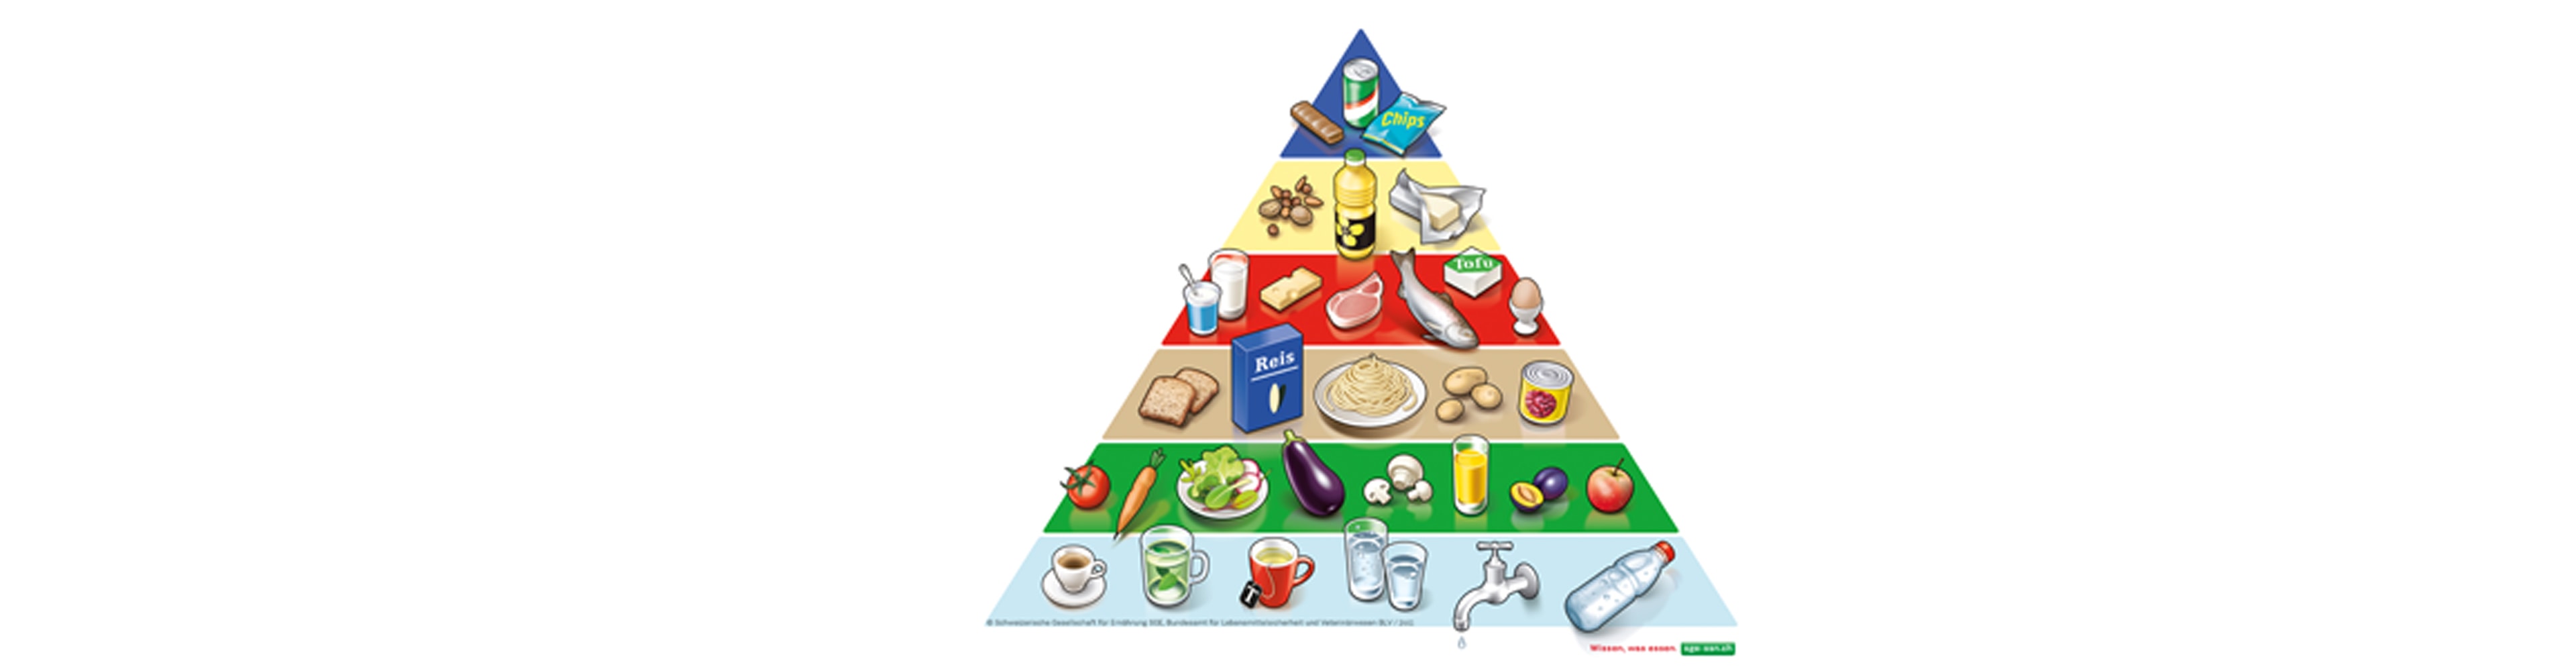 La pyramide alimentaire suisse – allier plaisir et équilibre